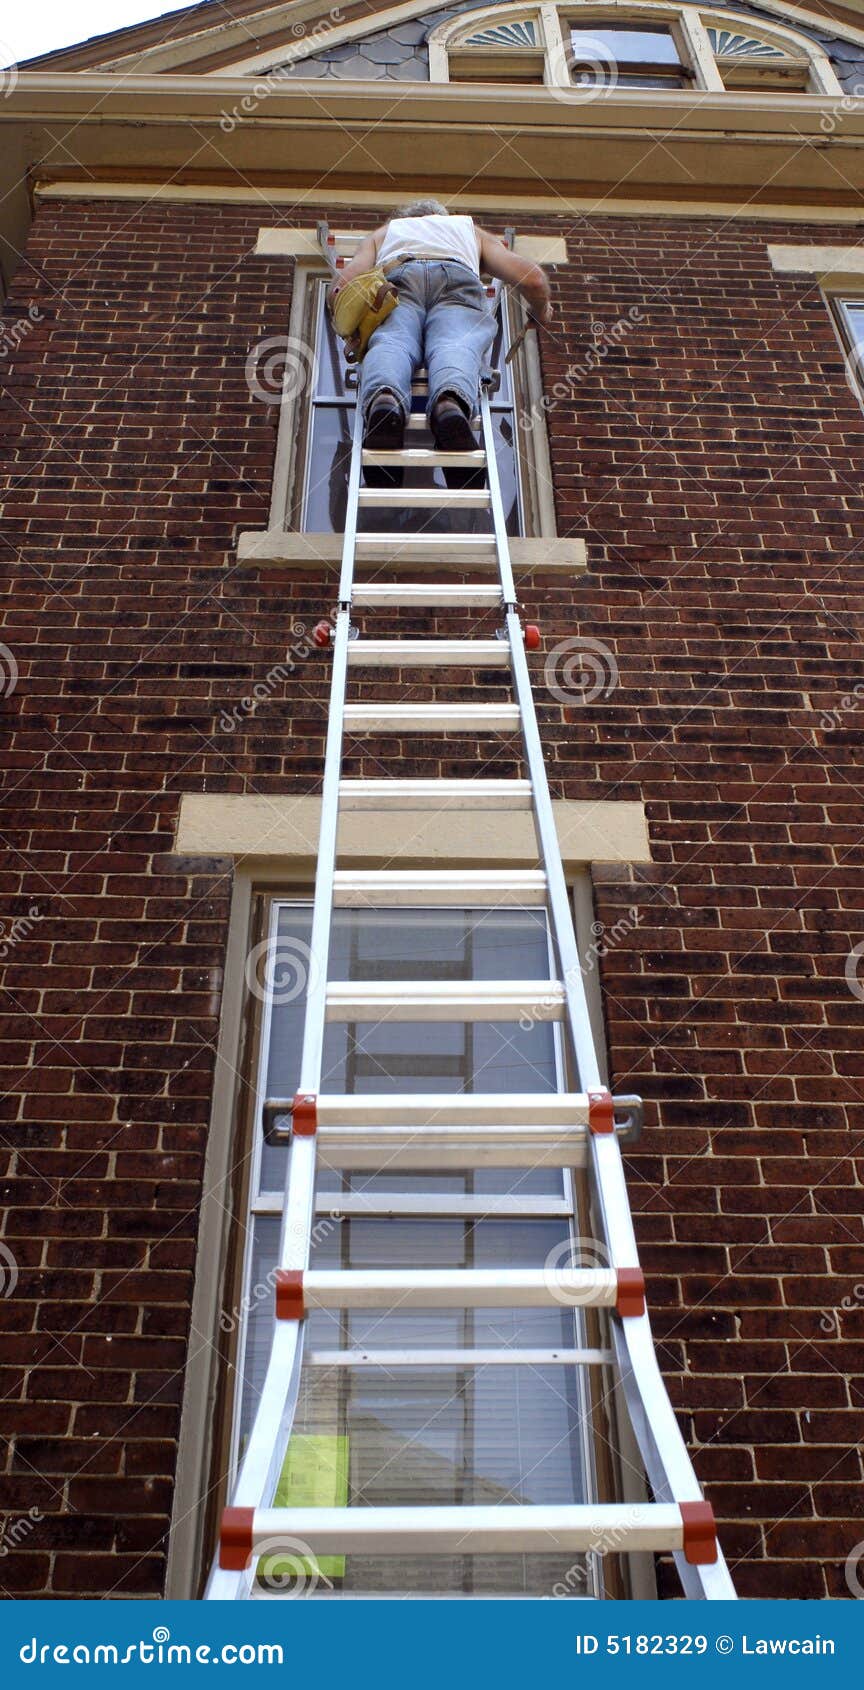 steep ladder work